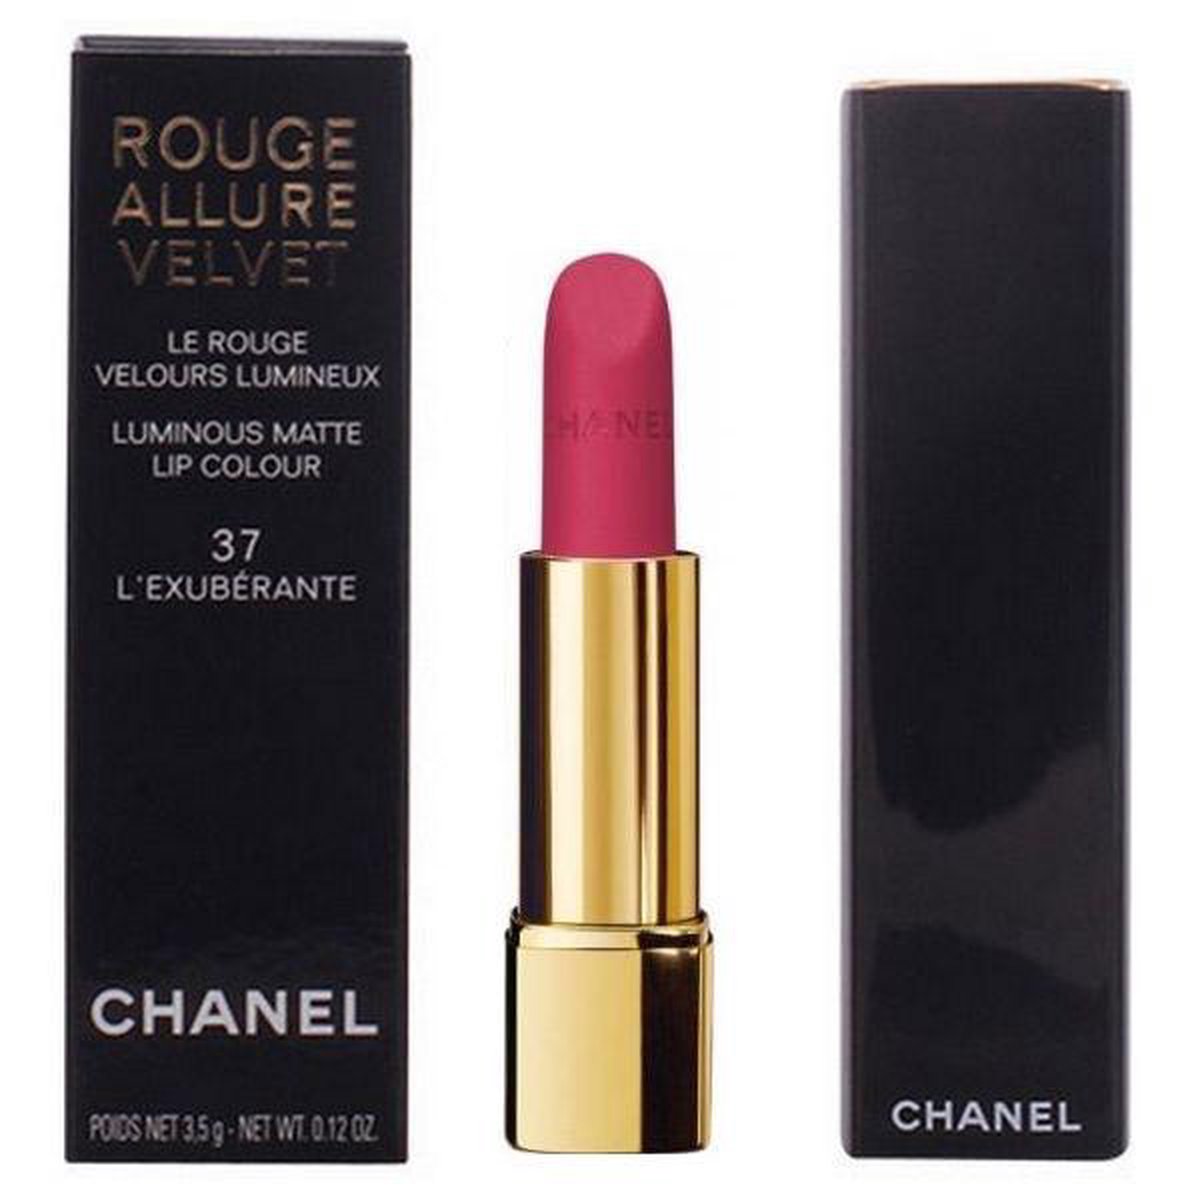 Chanel Rouge Allure Velvet Luminous Matte Lipstick - 64 First